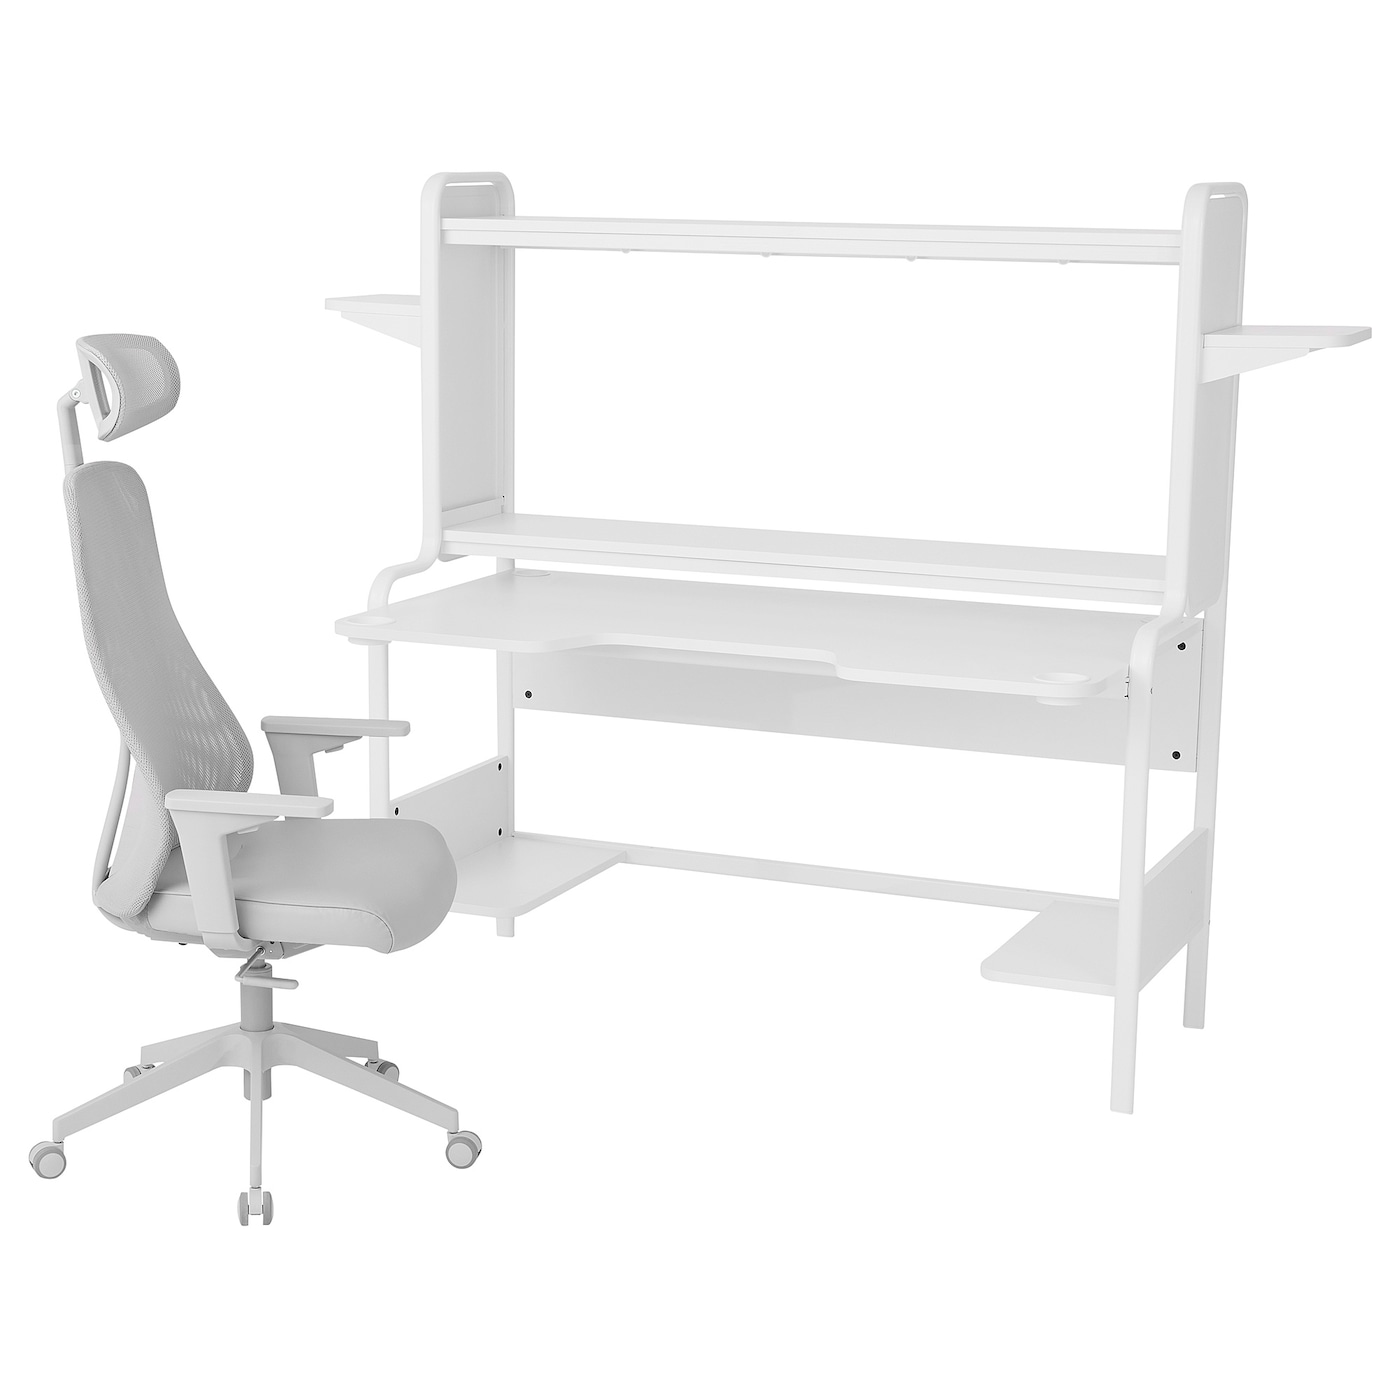 Игровой стол и стул - IKEA FREDDE / MATCHSPEL, белый/светло-серый, ФРЕДДЕ/МАТЧСПЕЛ ИКЕА